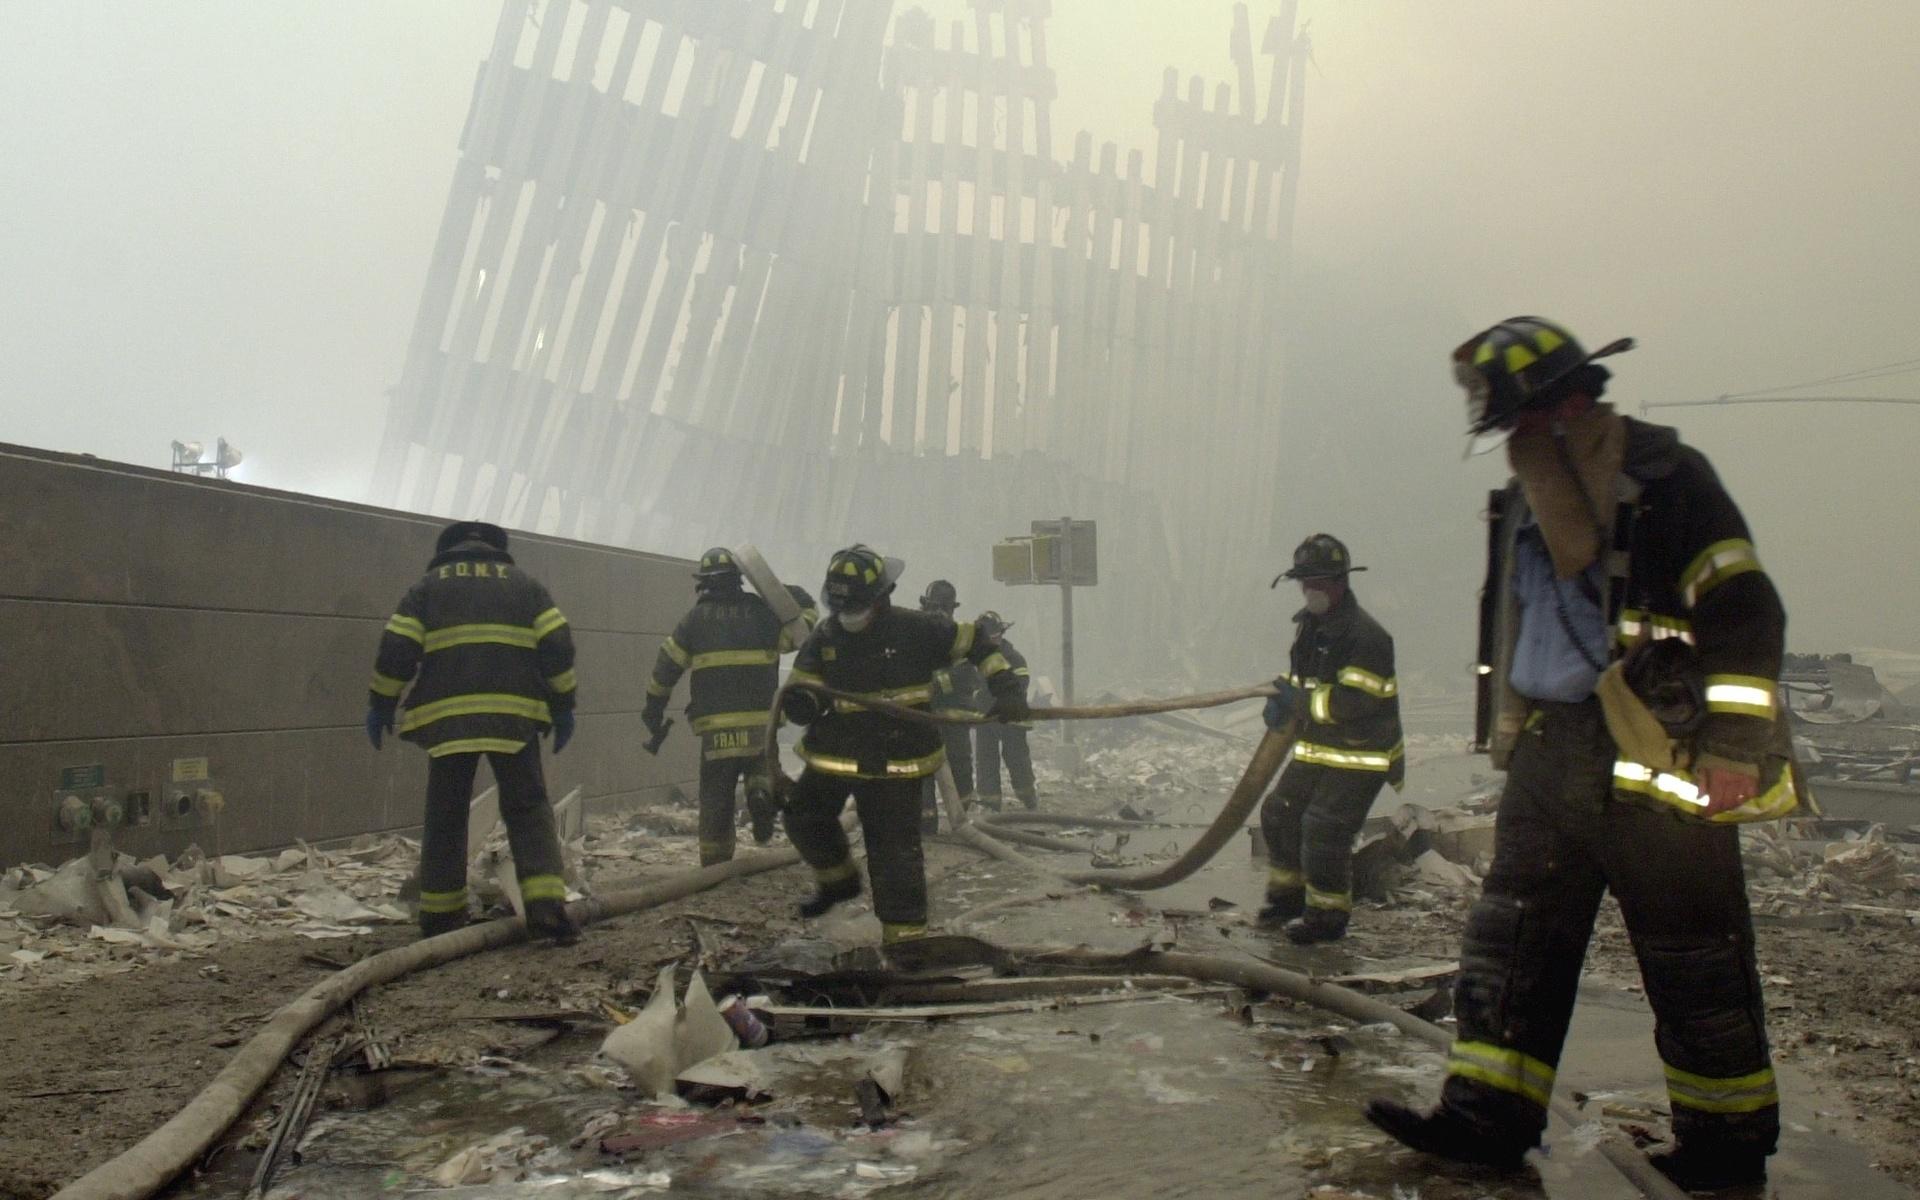 414 räddningsarbetare, varav 343 brandmän som tagit sig in i byggnaderna för att hjälpa de flyende, föll själva offer när tornen störtade samman.